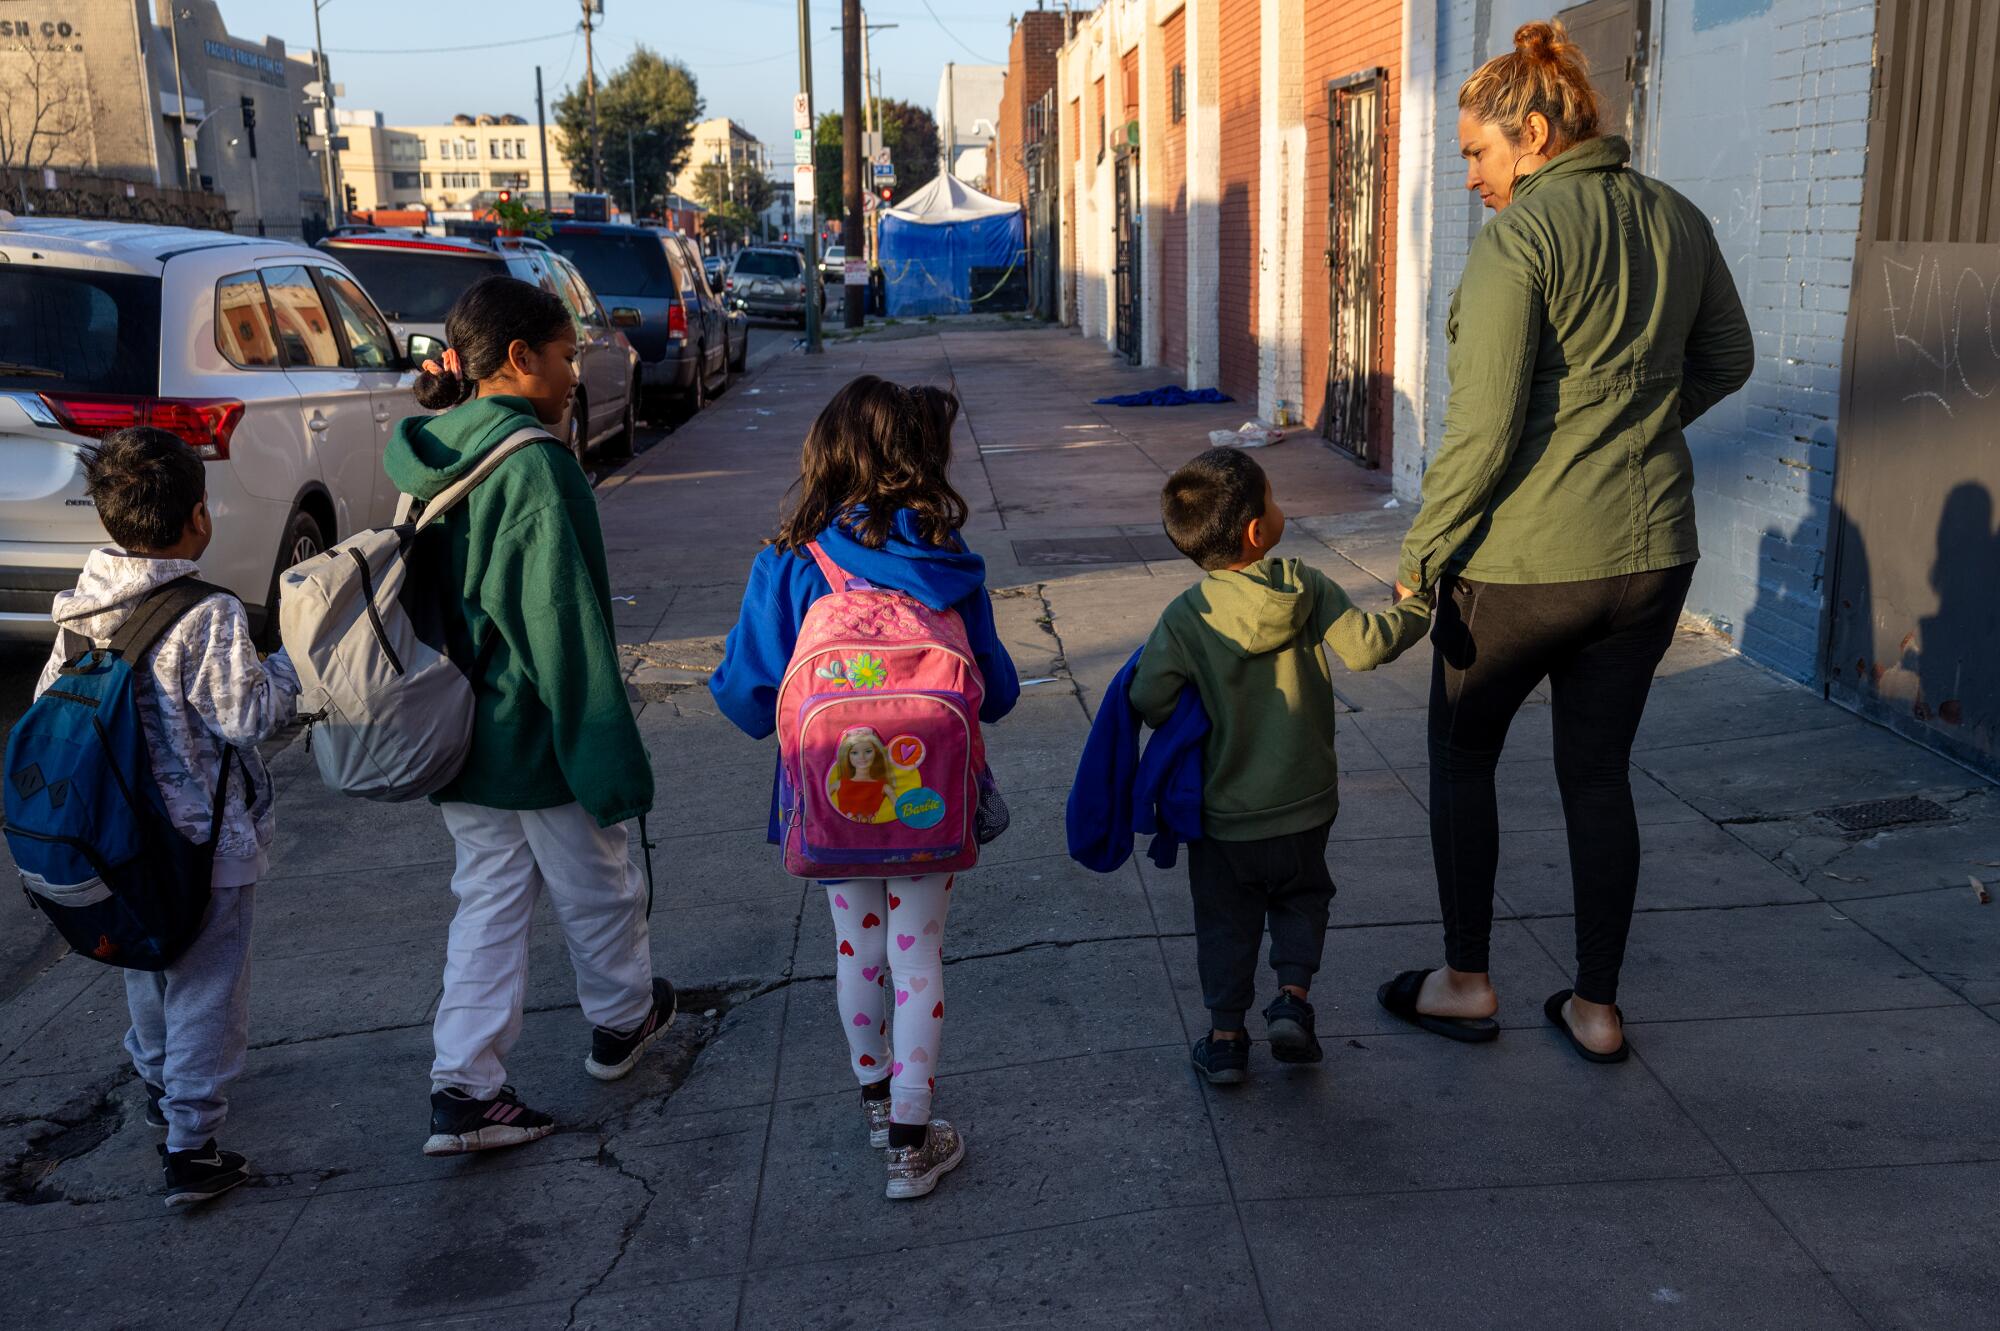 A woman walks with four children on a sidewalk.